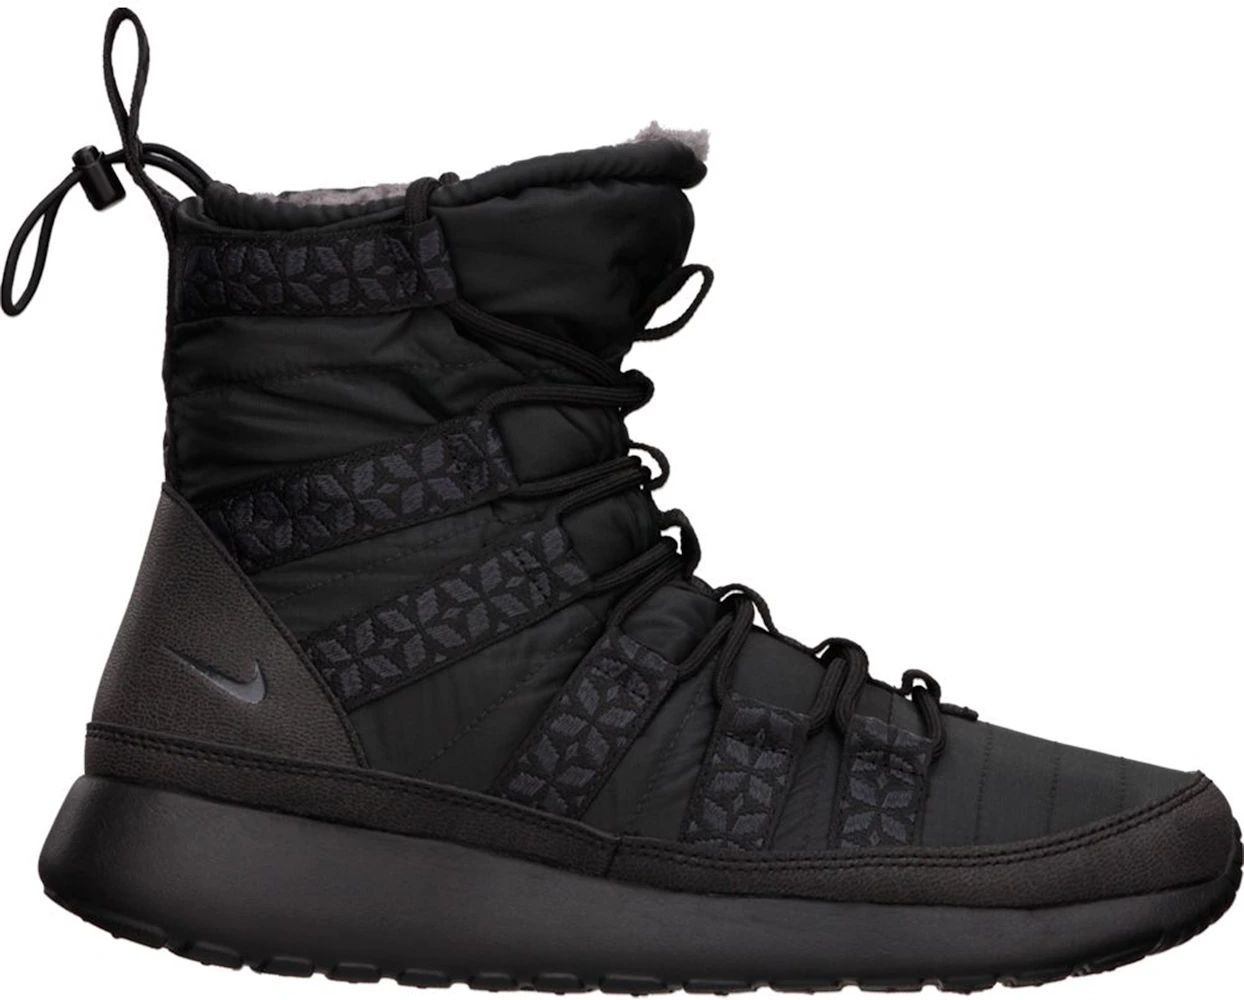 Nike Roshe Run Sneakerboot Black - 615968-006 US